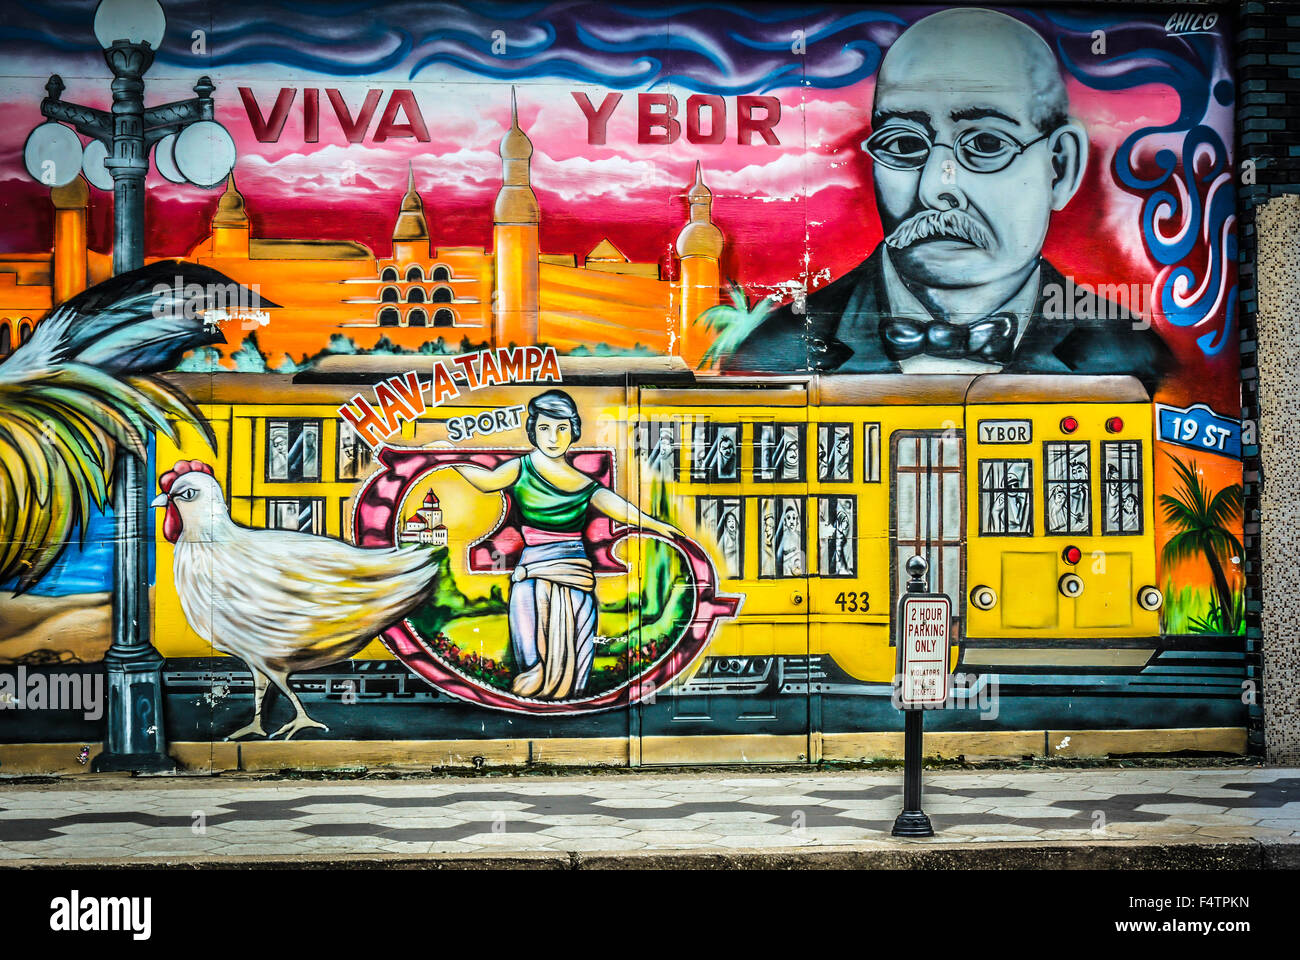 Arte di strada, murales e grafica a Ybor City, FL, l'ex 'Cigar capitale del mondo' insediata da immigrati cubani e spagnoli nella zona di Tampa Foto Stock